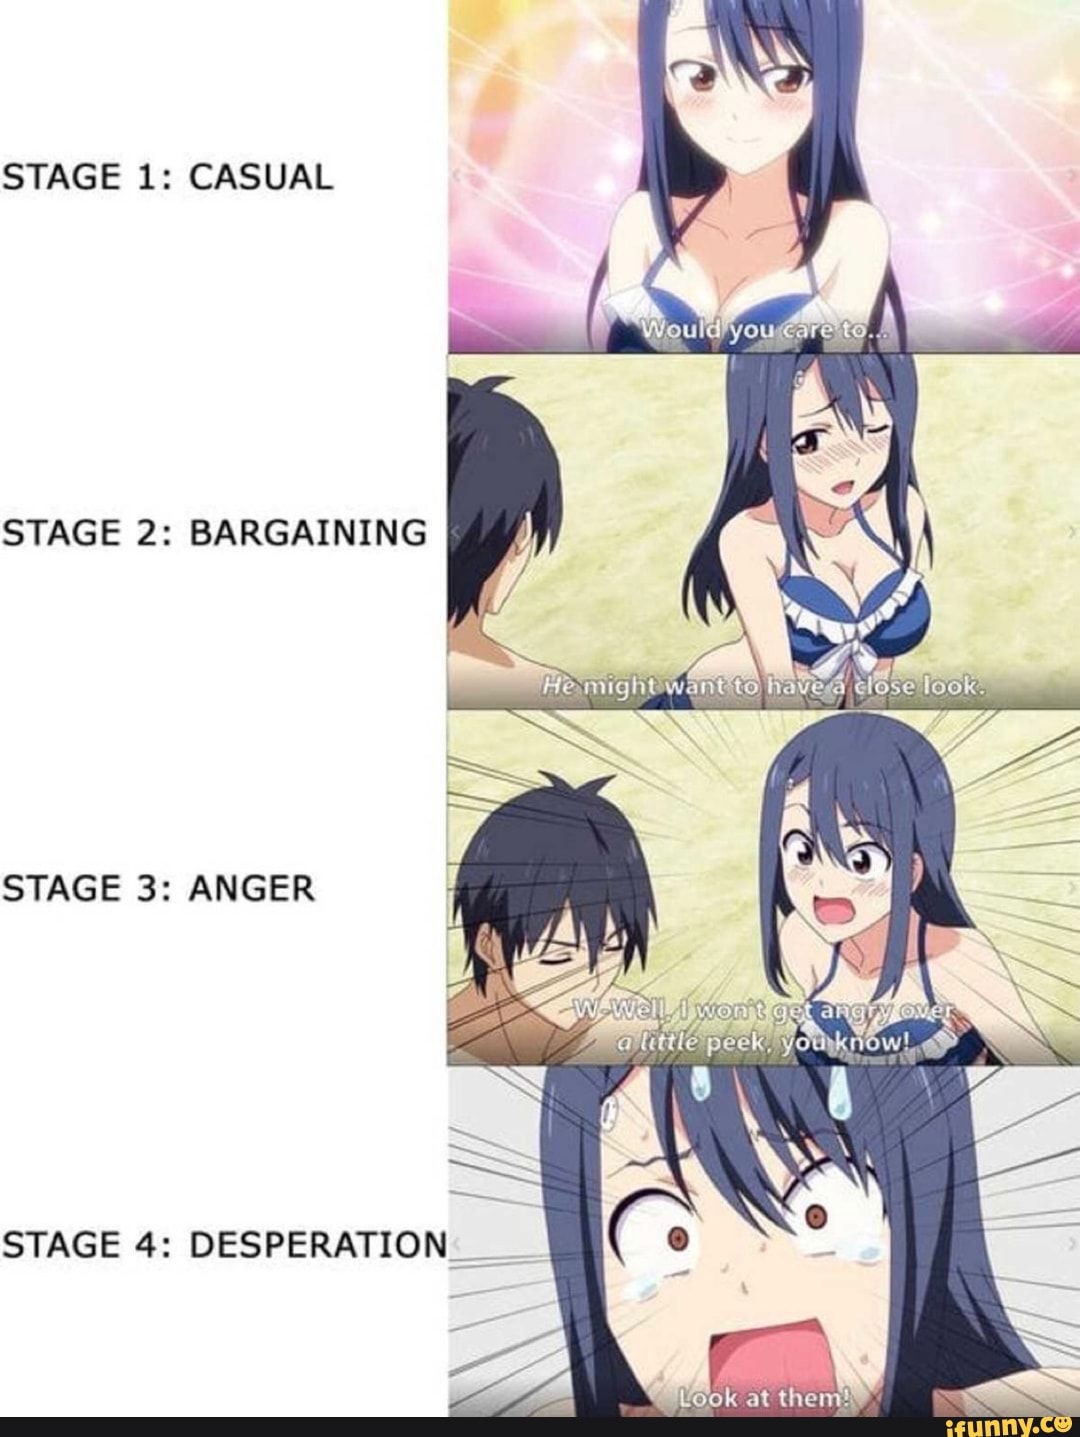 Anime Girl Desperation